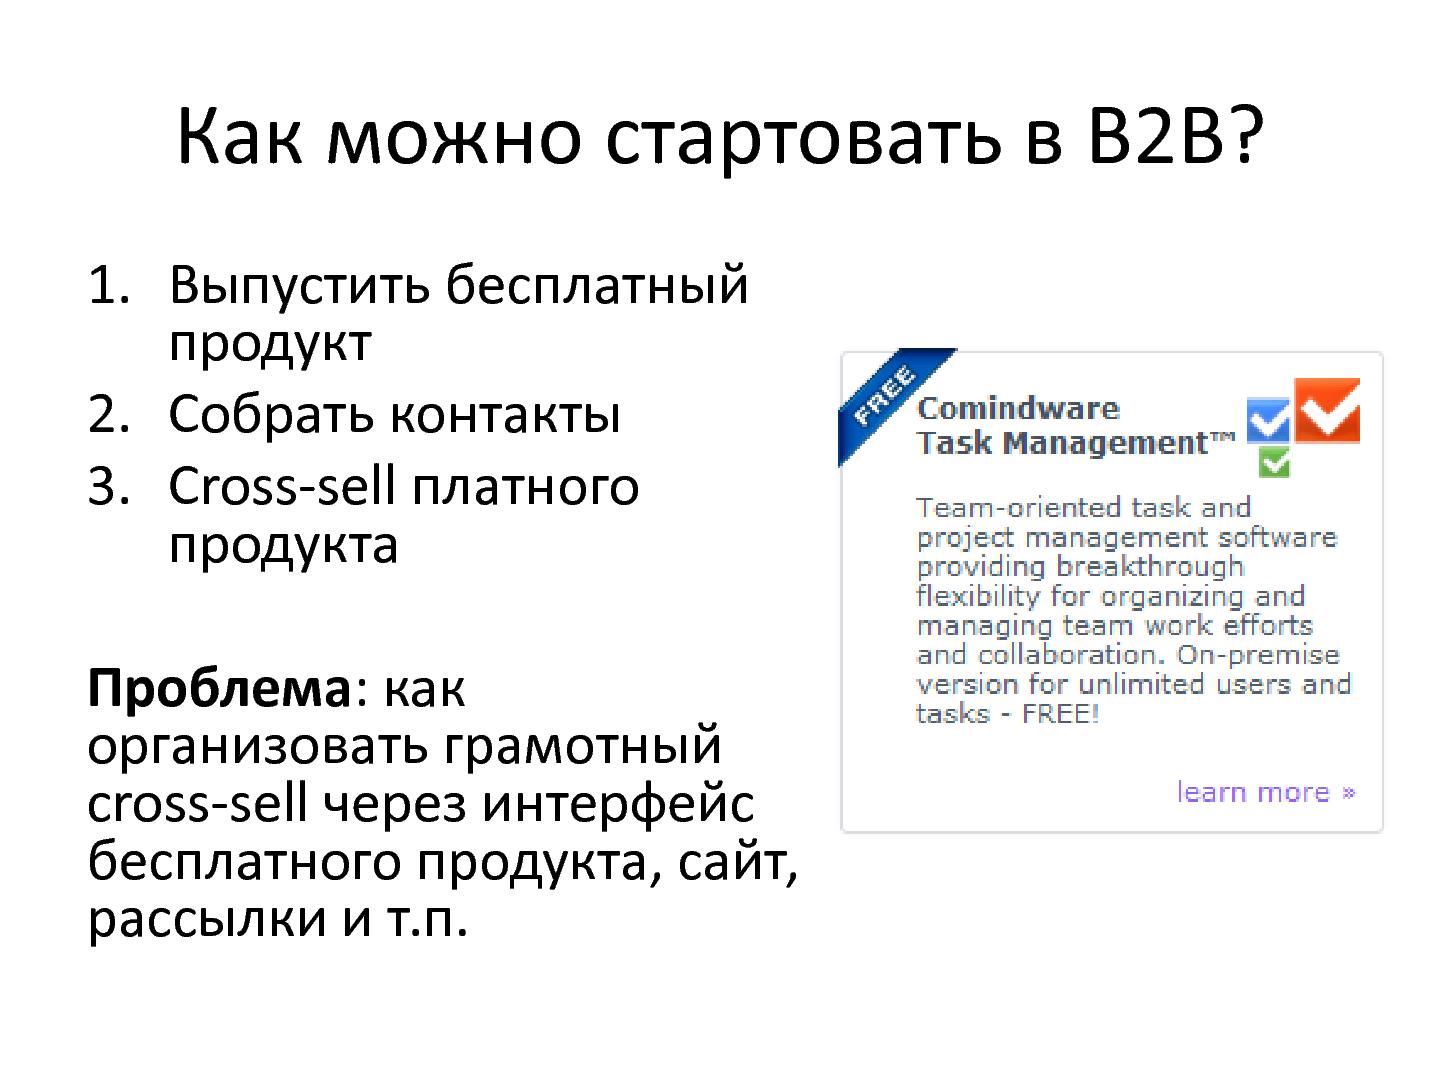 Файл:Проектирование продуктового портфеля на примере Comindware (Константин Бредюк, ProductCampSPB-2012).pdf